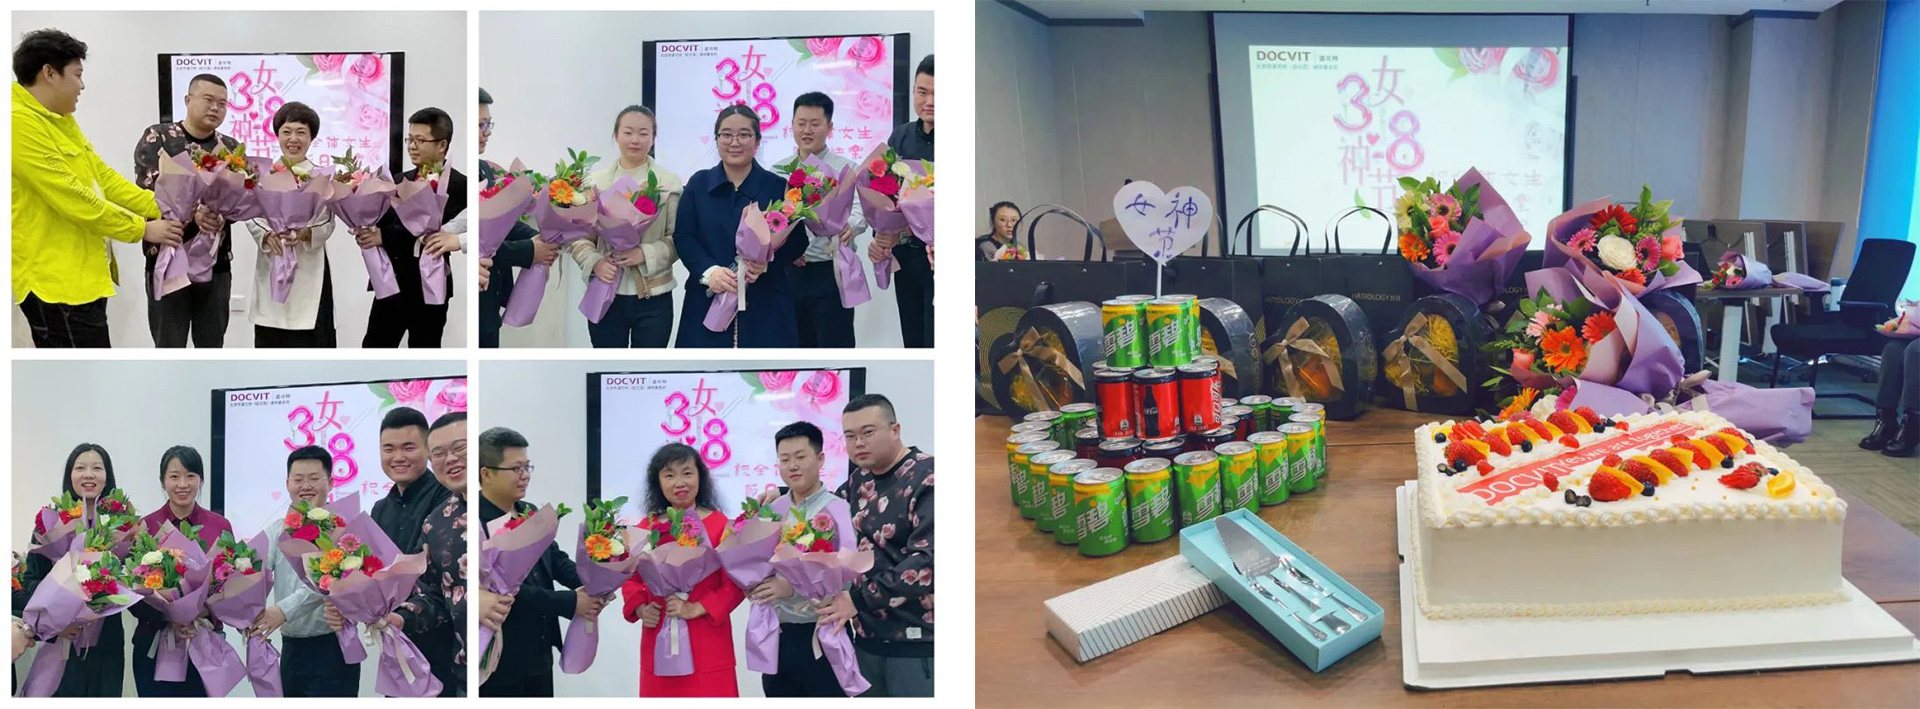 北京市道可特（哈尔滨）律师事务所为全体女性员工举办庆祝活动